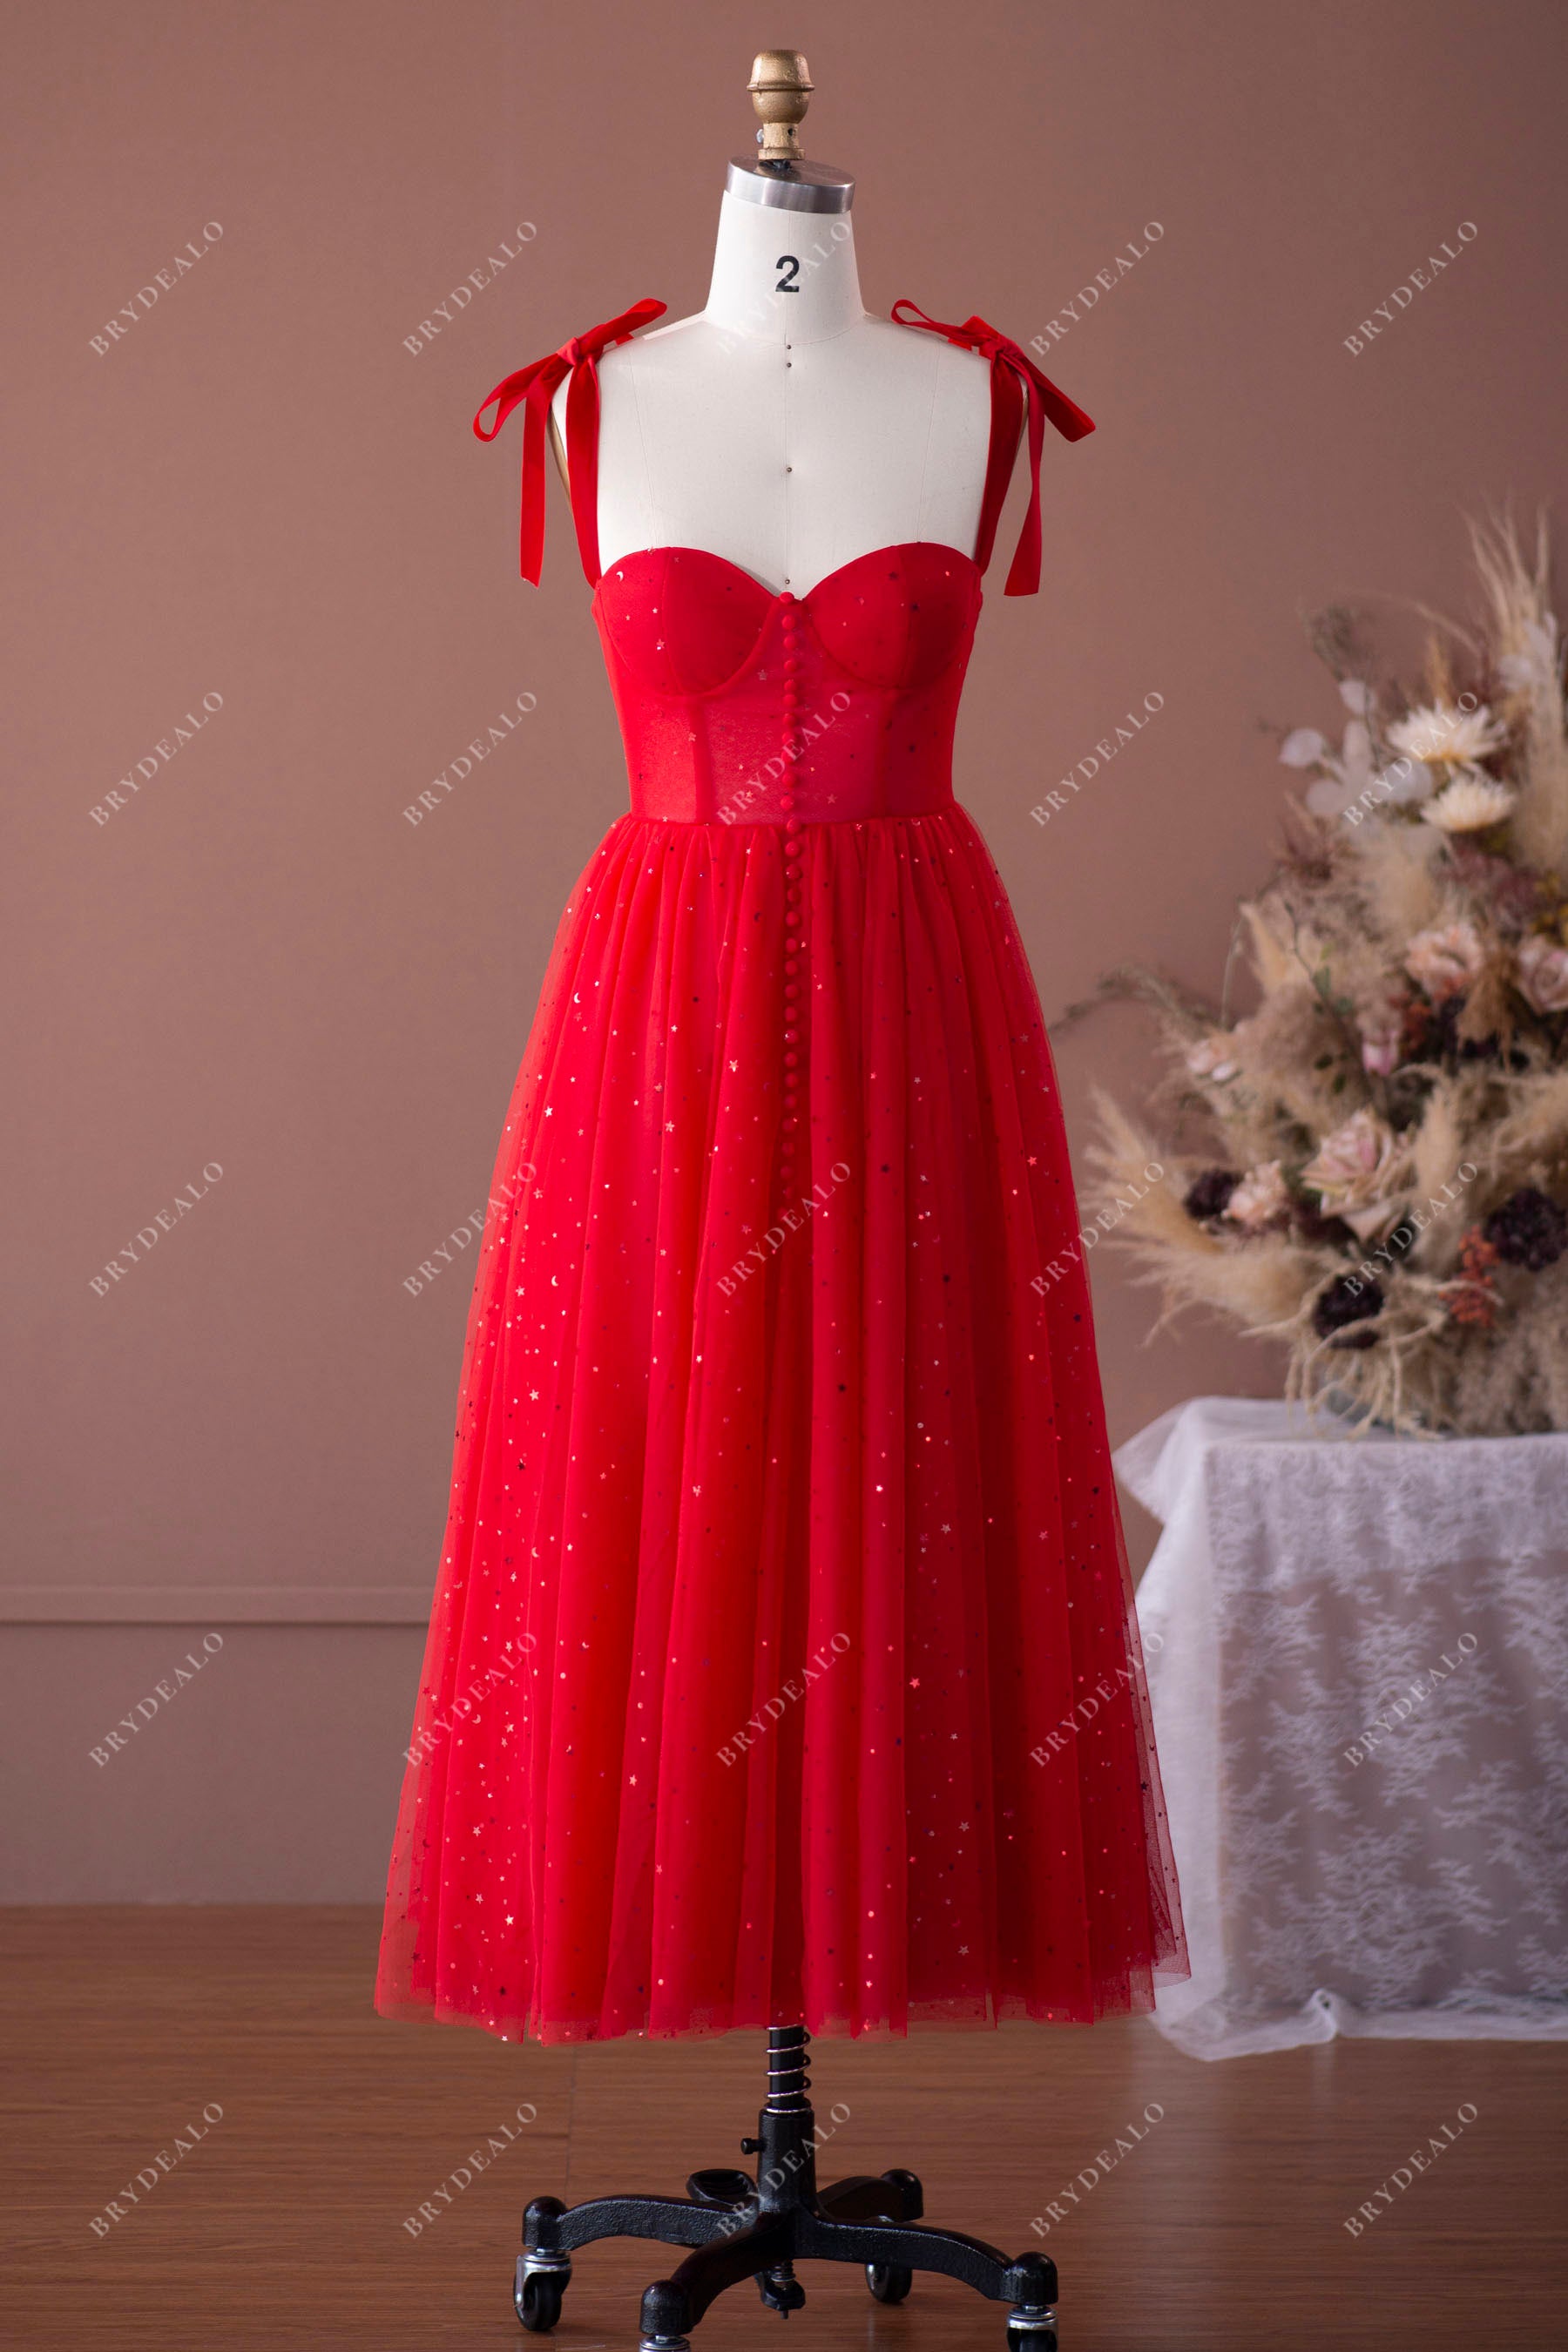 Modest Strapless Sleeveless Black Tea Length Prom Dress Online